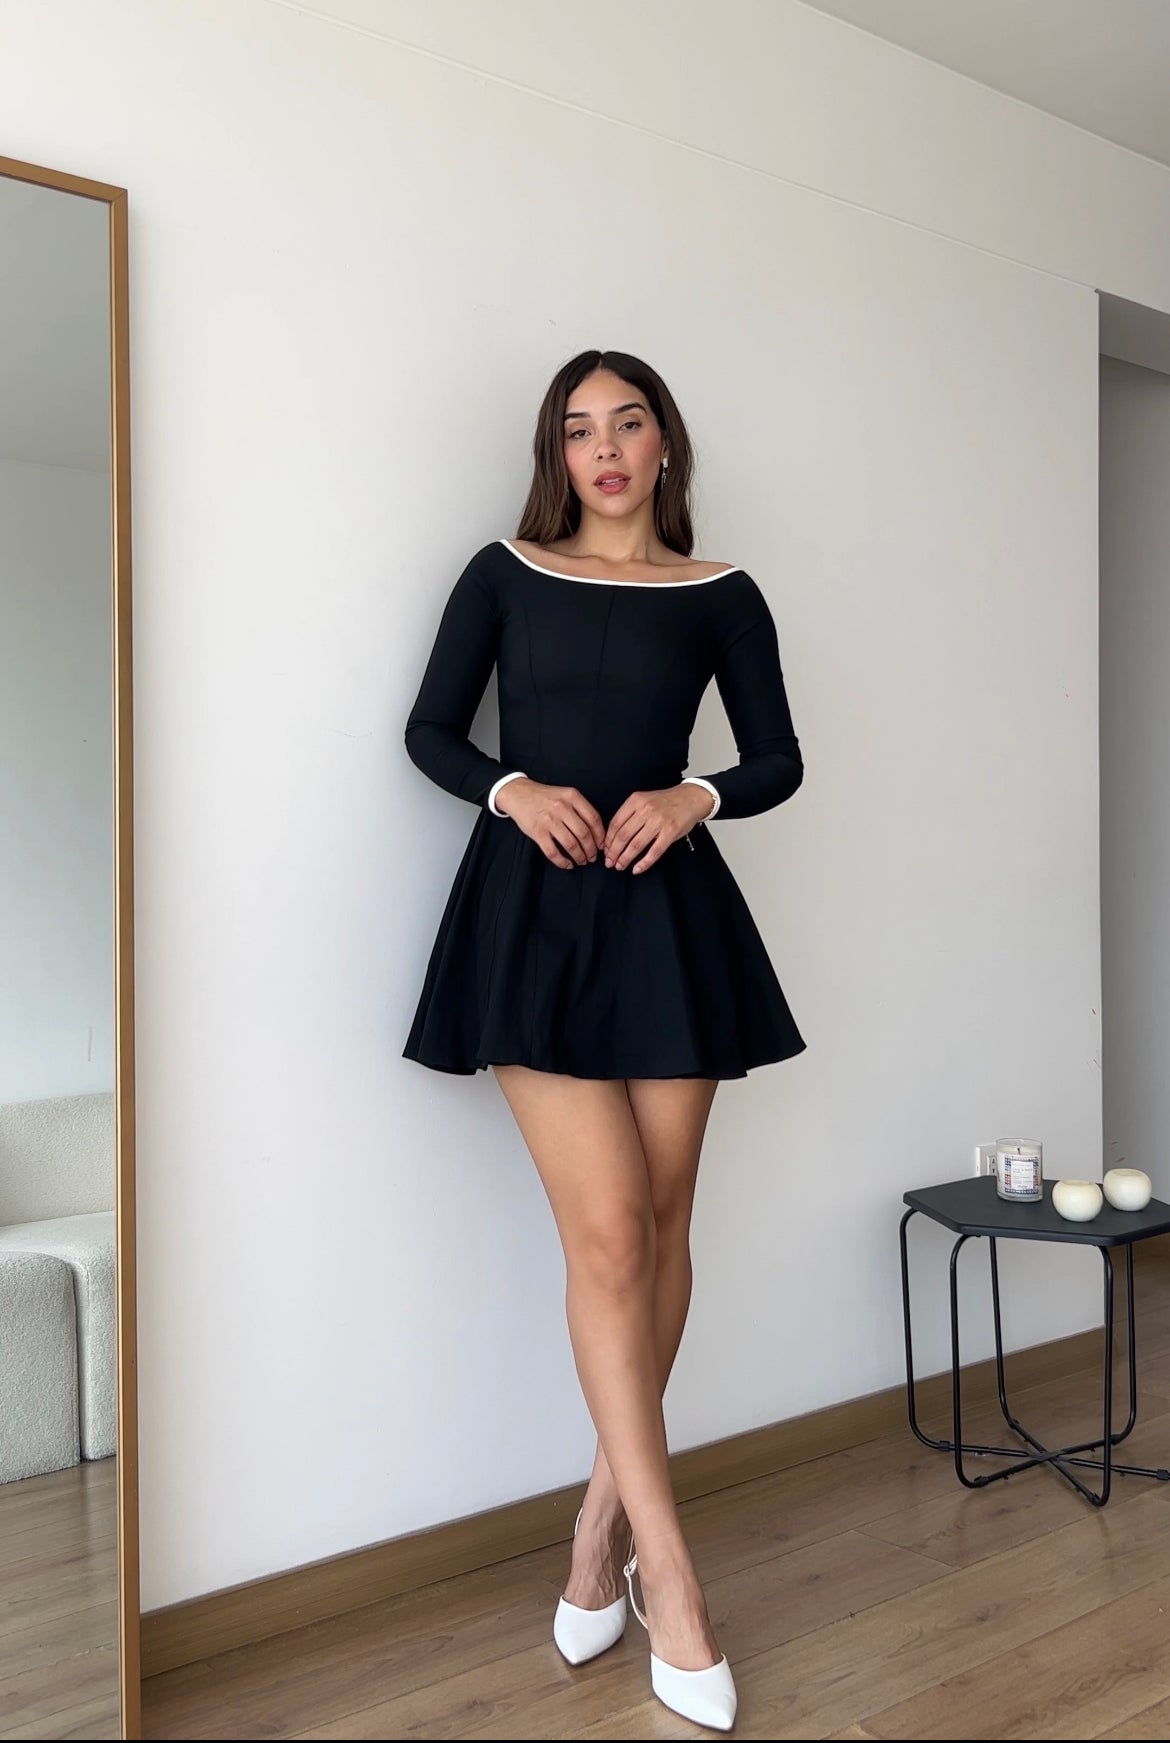 Mariana vestido negro